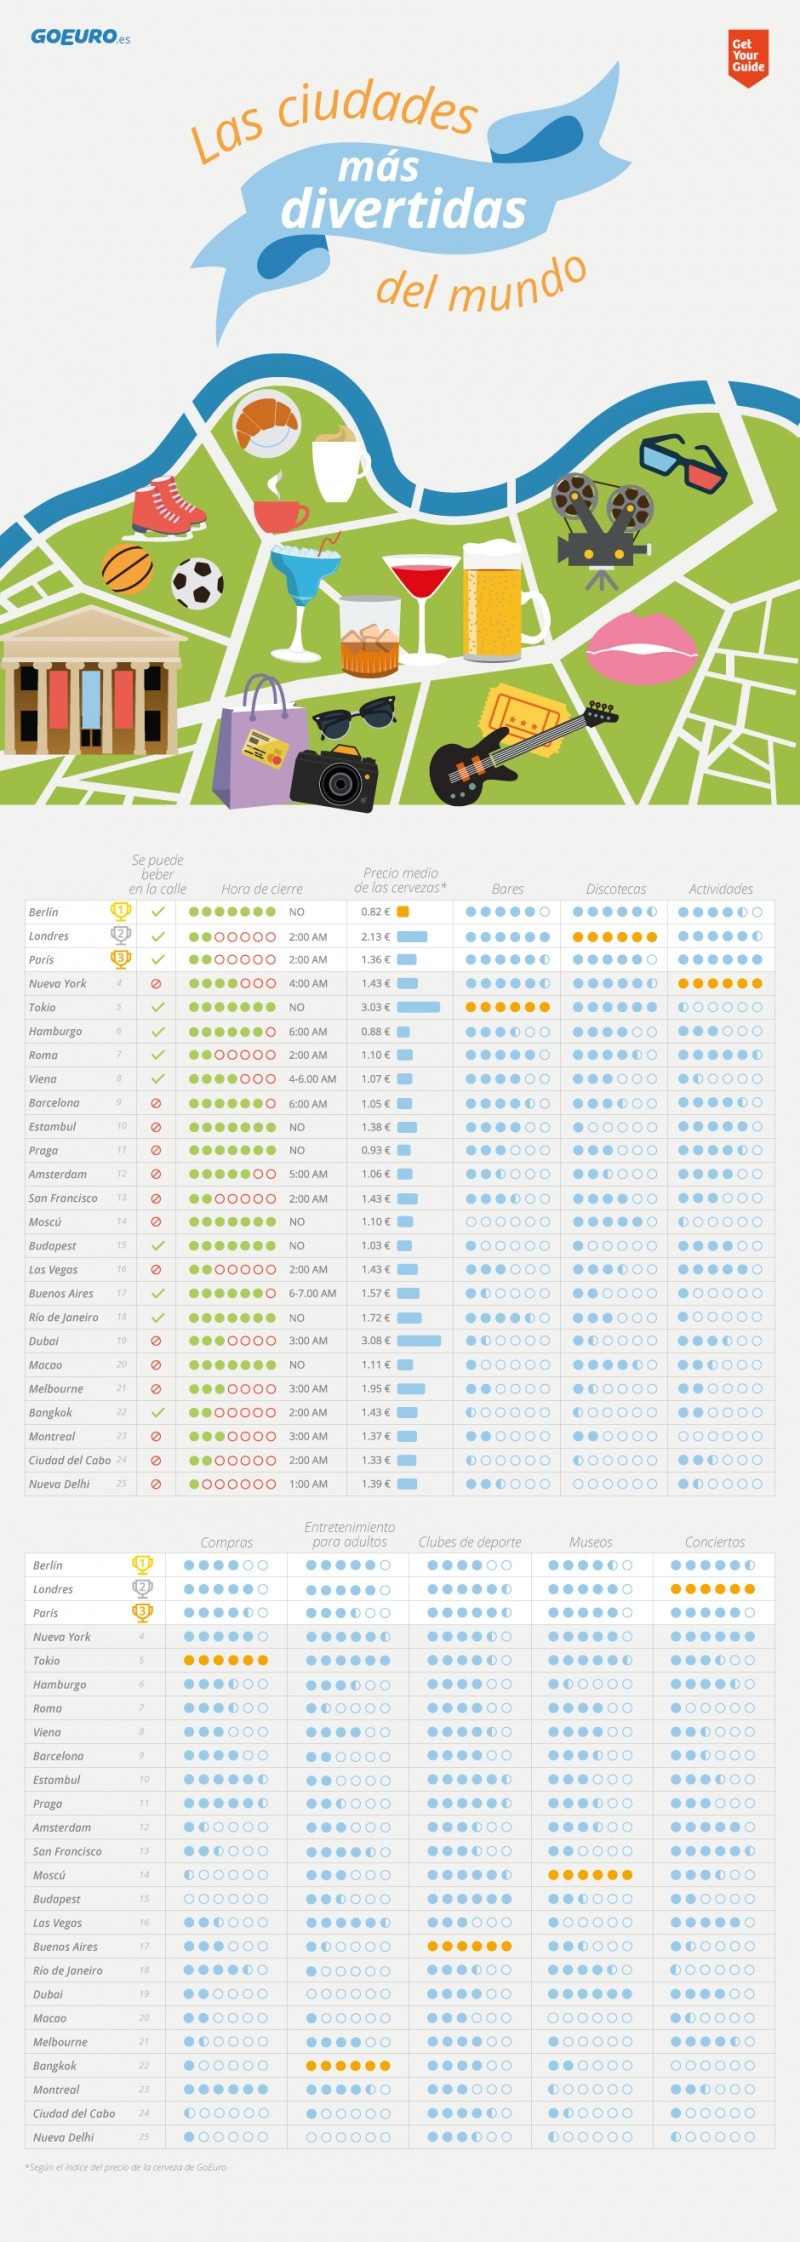 Infografía de las 25 ciudades más divertidas del mundo, según GoEuro.